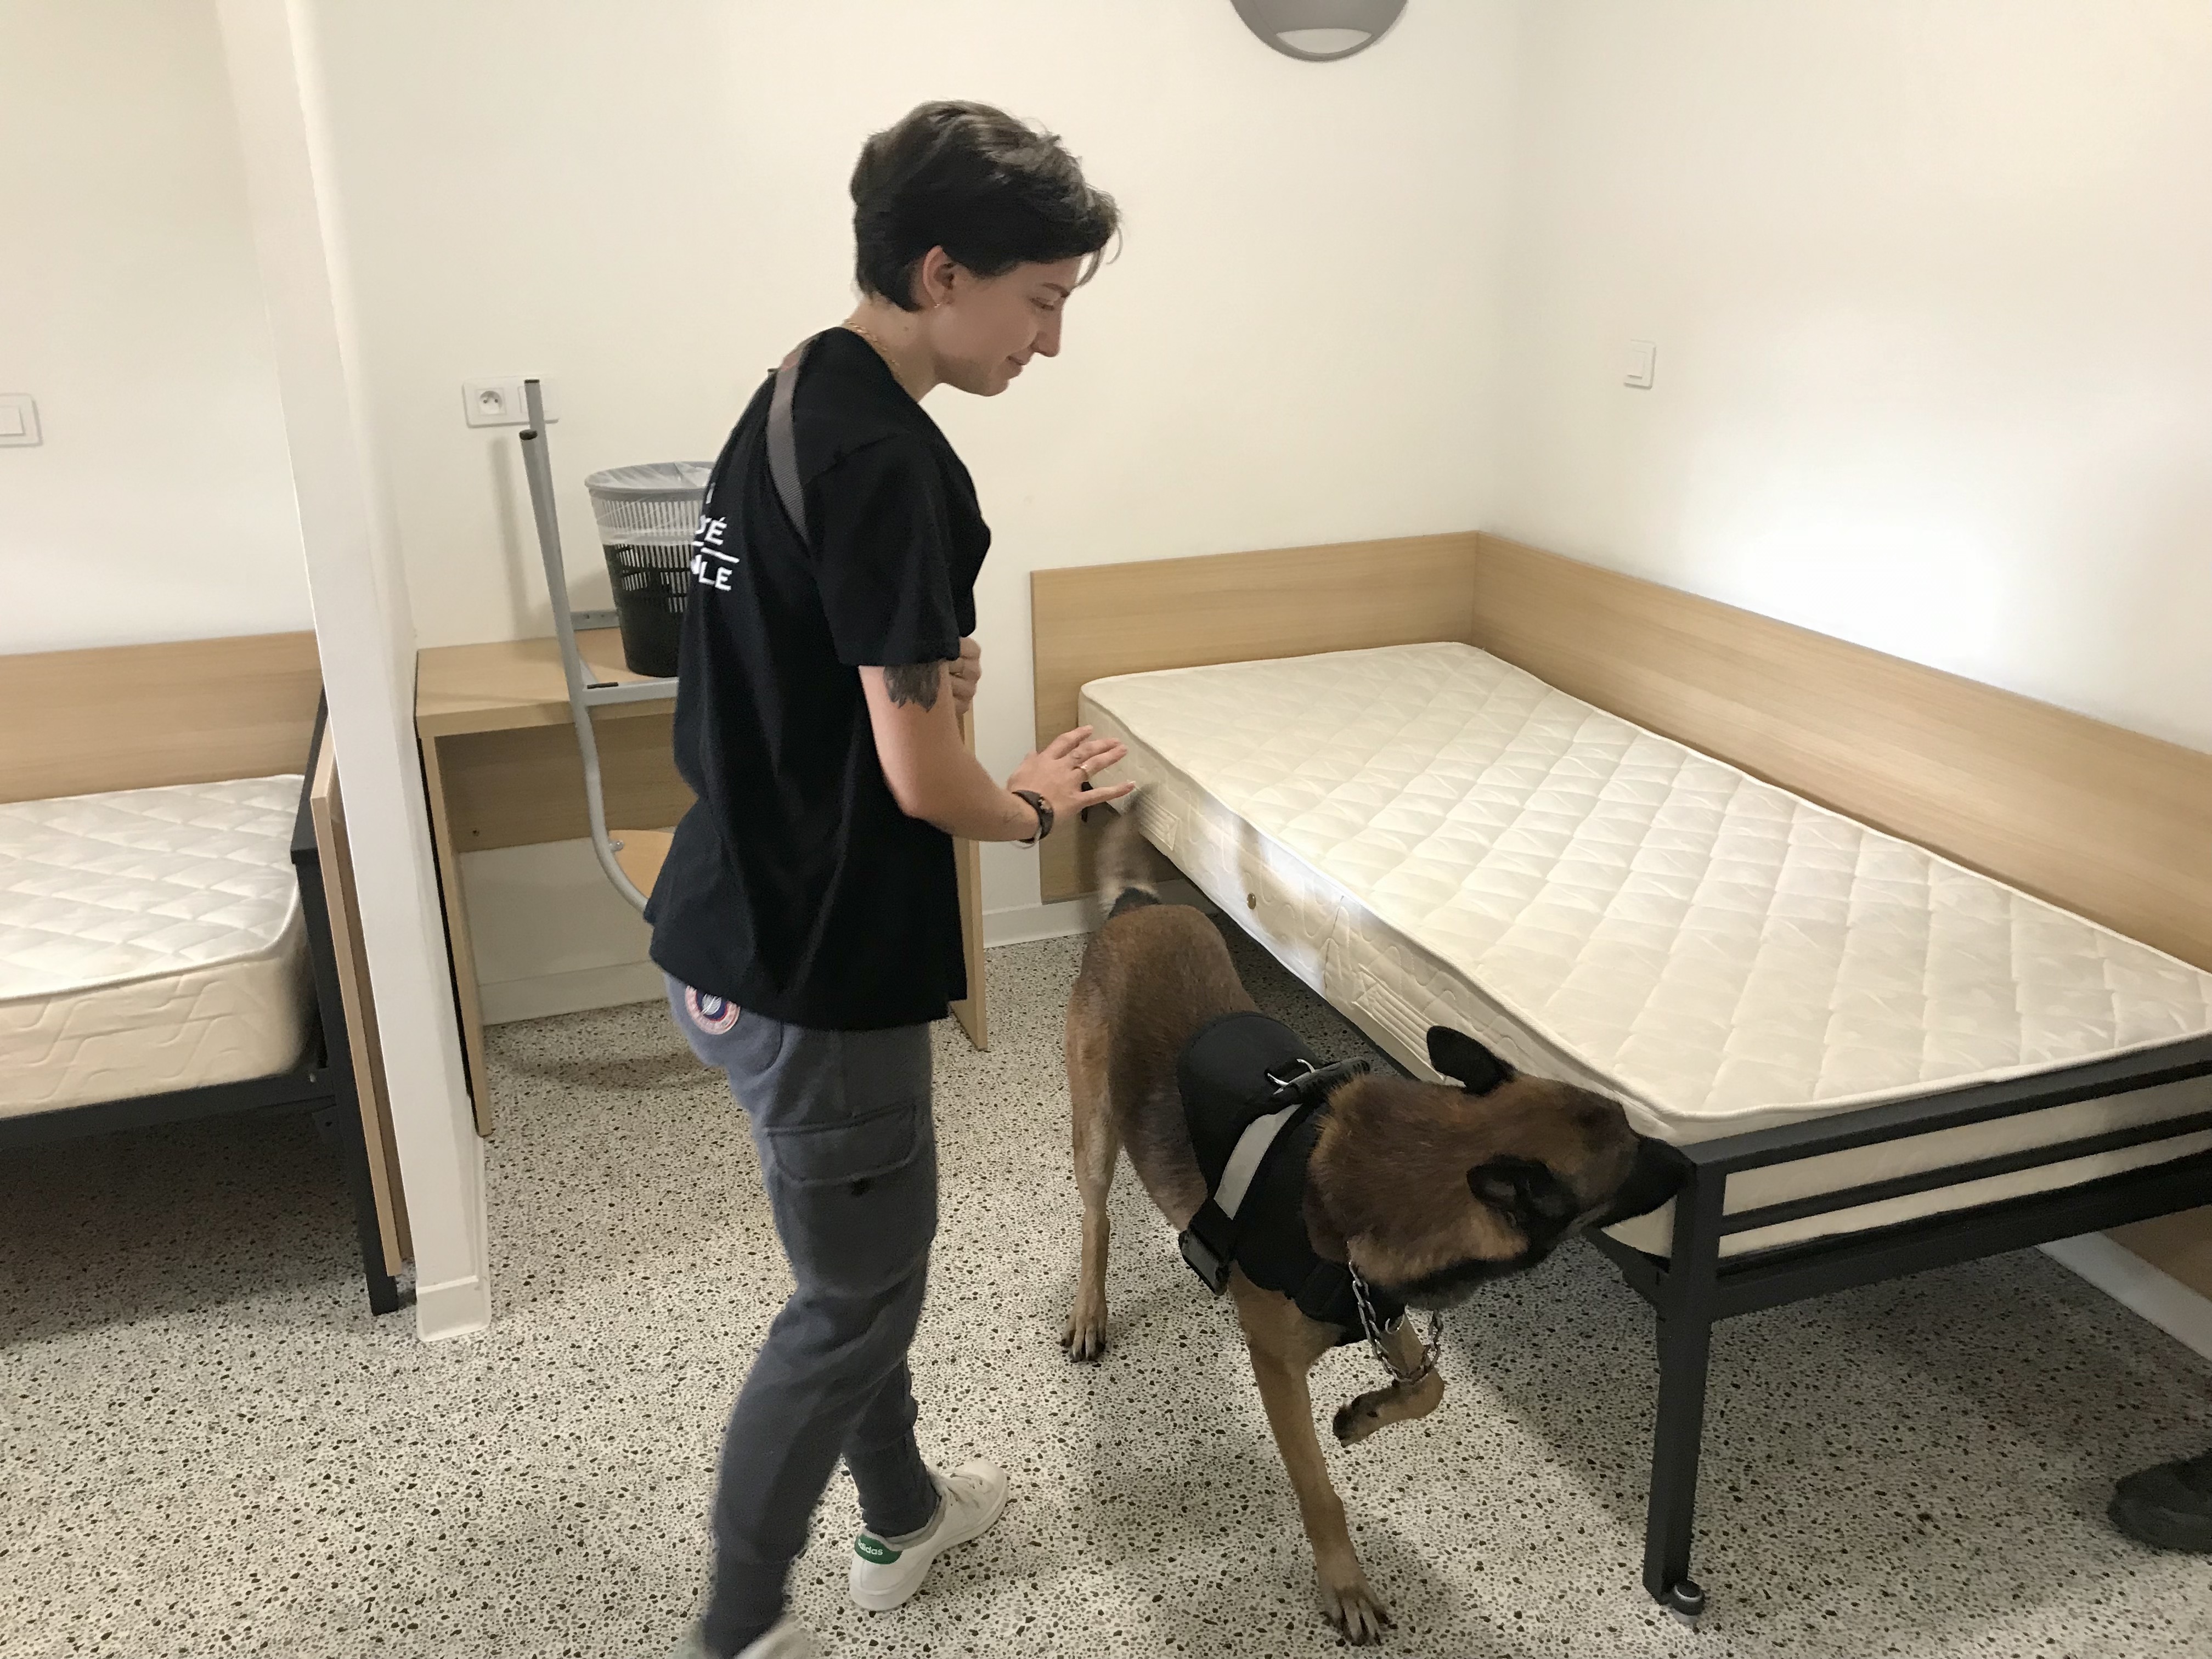 DPJ société cynophile, basée à Borgo, entraîne régulièrement ses chiens à retrouver des phéromones de punaises de lit. Ici, Aymie Vittini conduit son chien Saku.